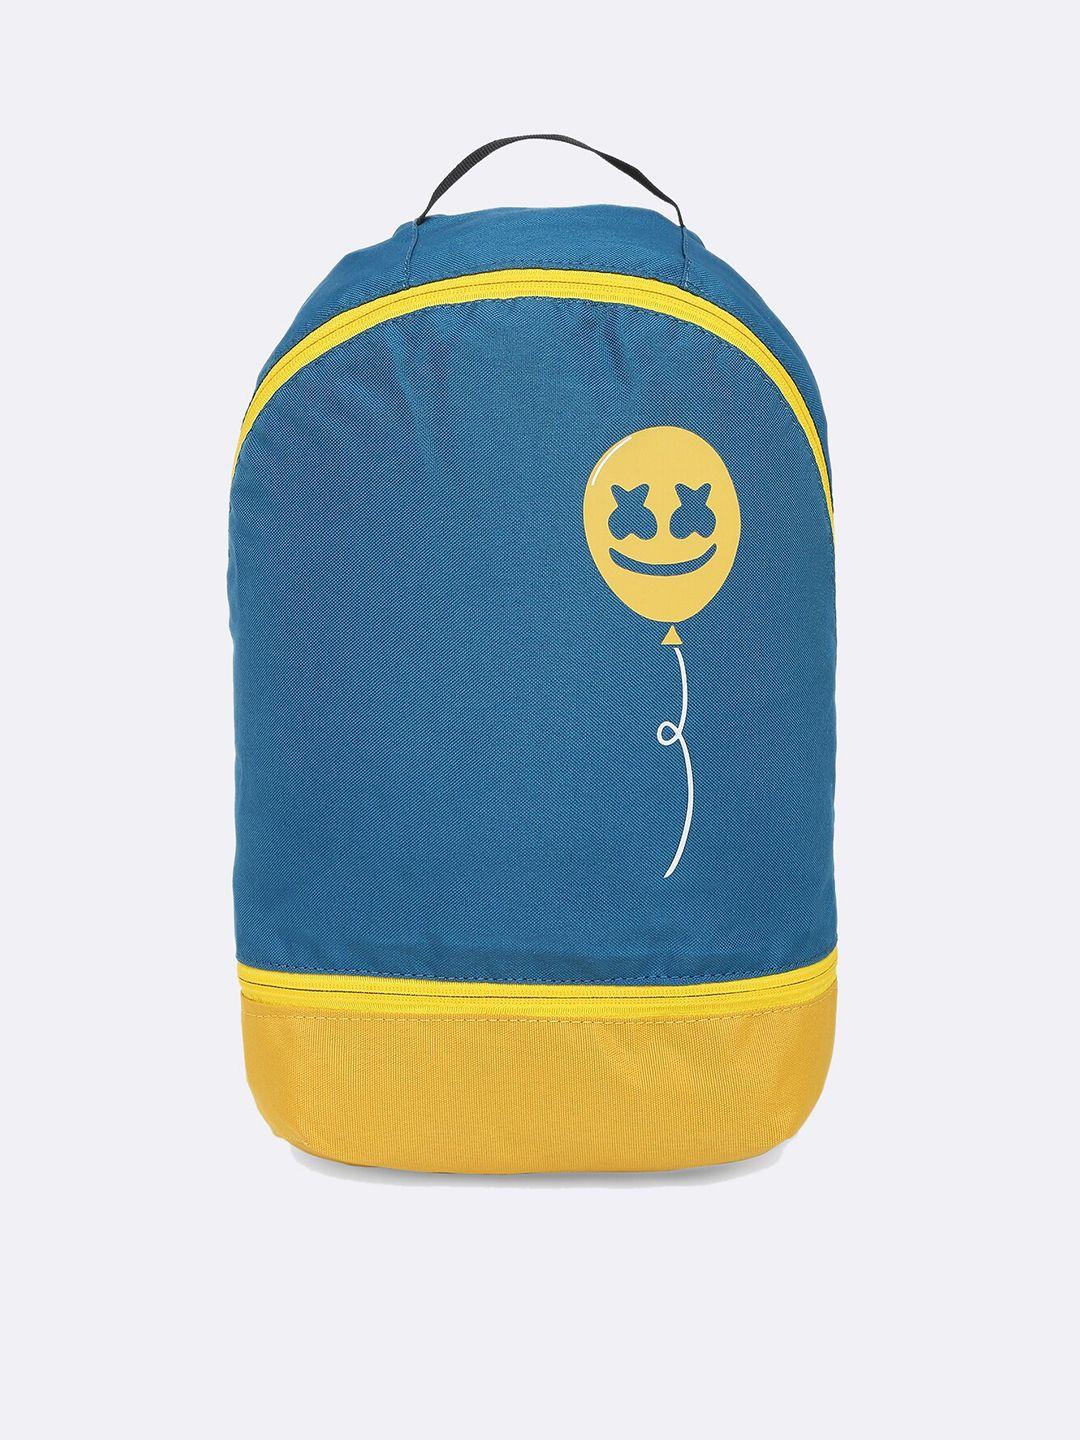 bewakoof unisex blue & yellow graphic backpack